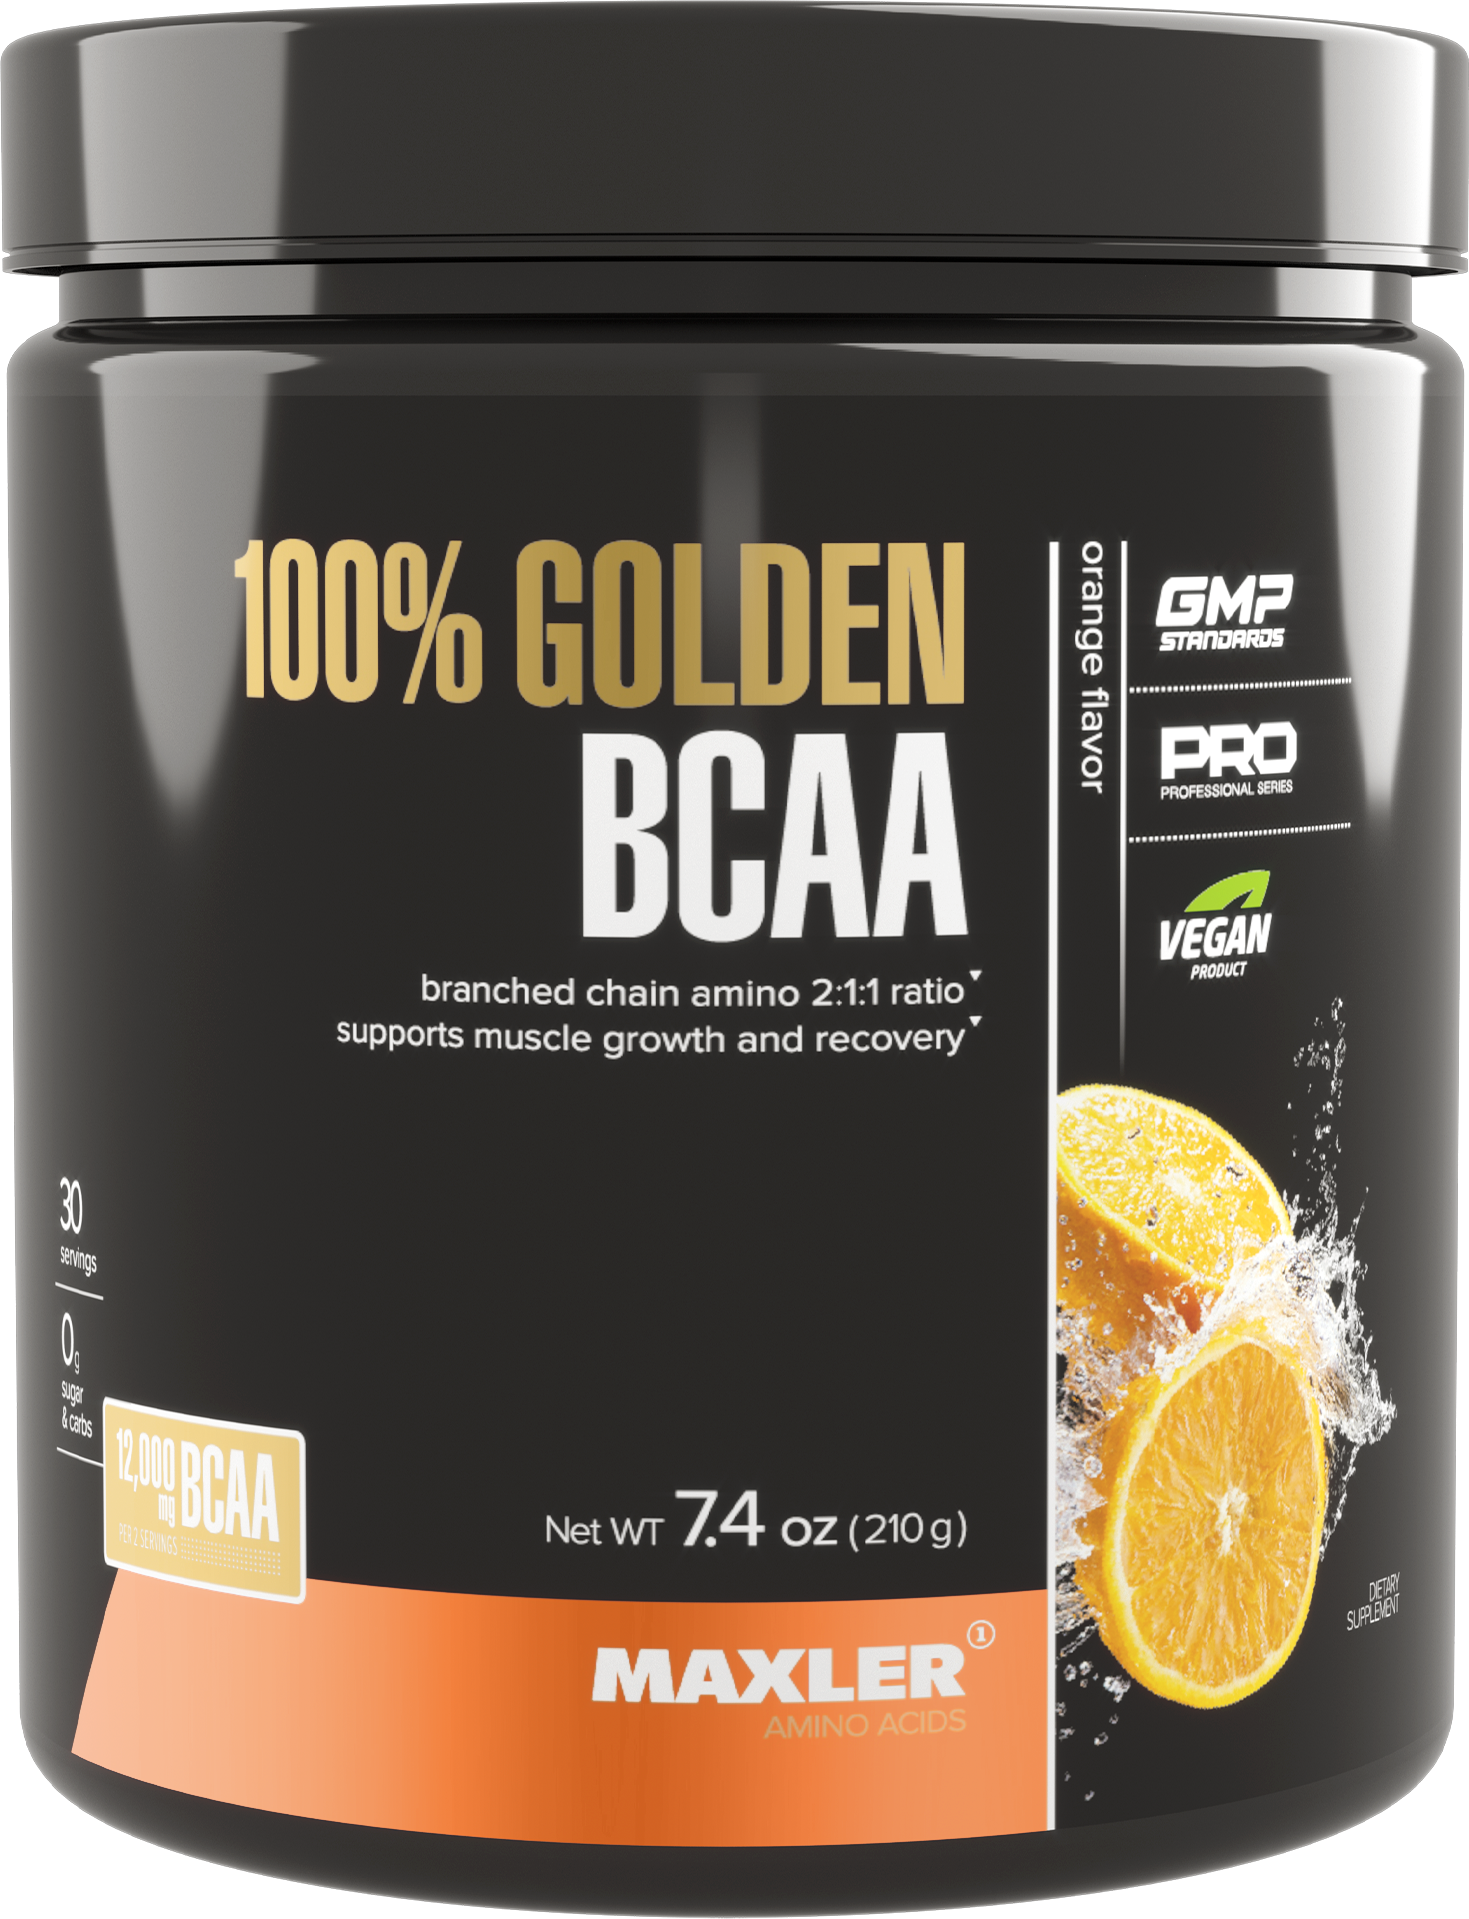 Аминокислоты Maxler 100% Golden BCAA - Апельсин, 210г - БЦАА в соотношении 2:1:1 - В форме порошка - 30 порций